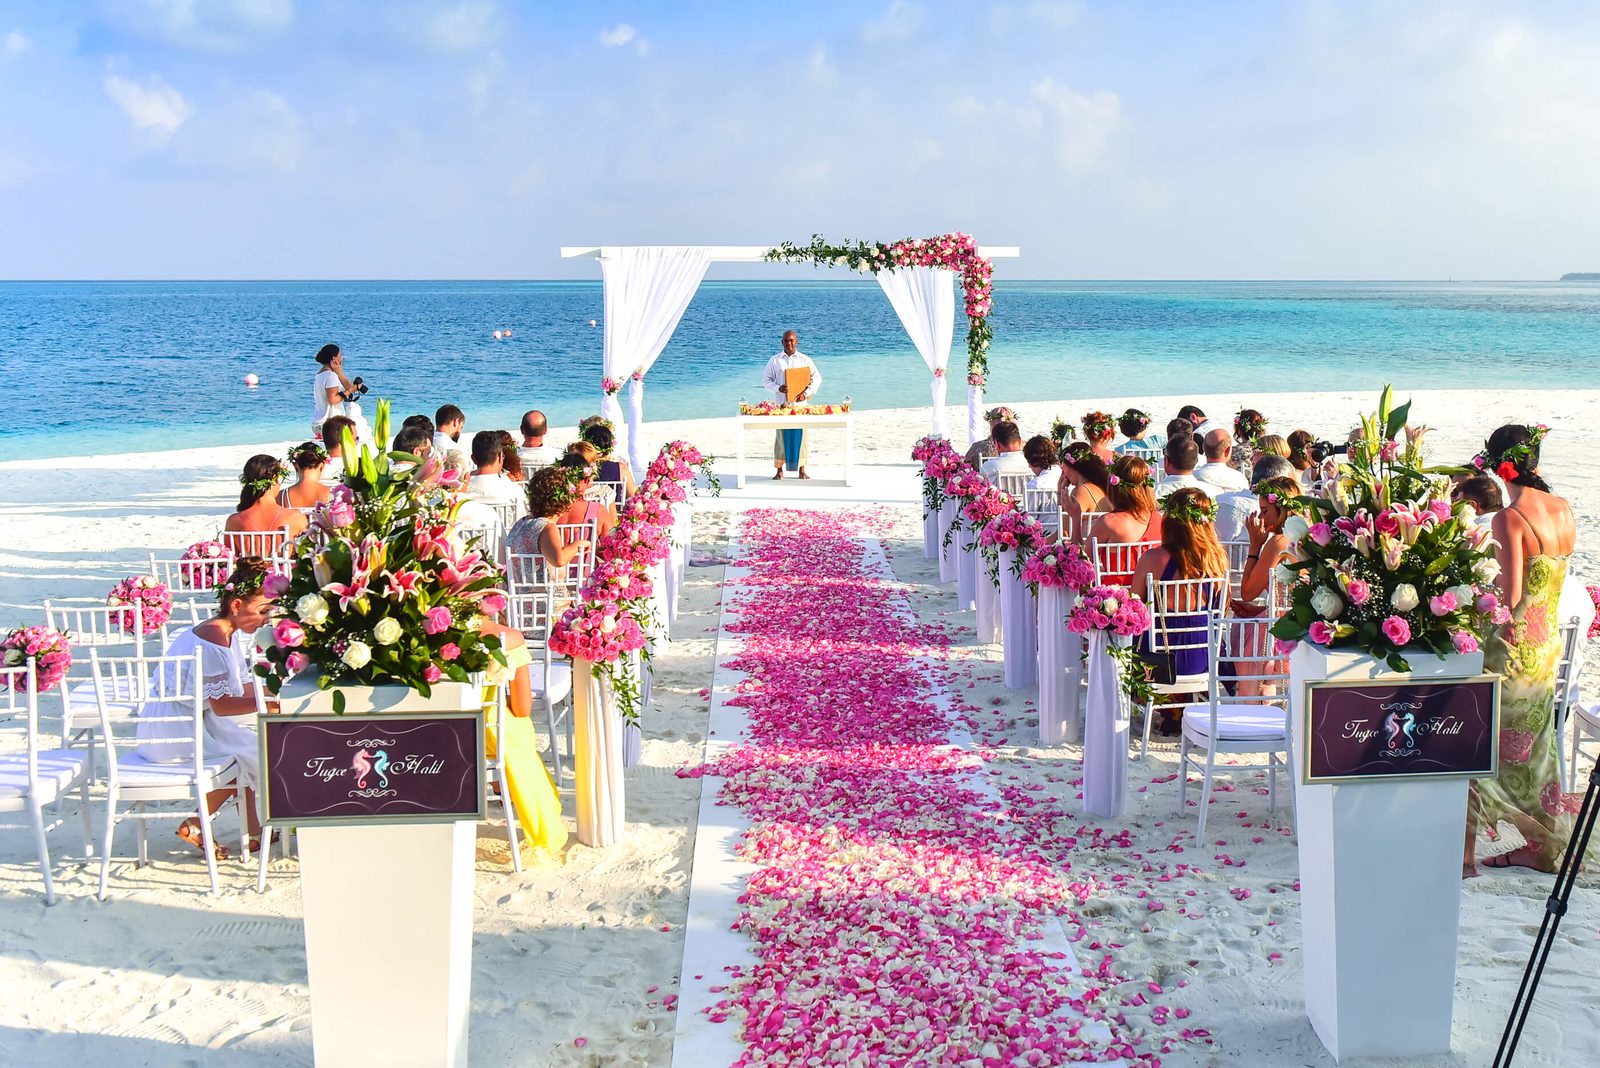 ¡Una boda en Bonaire es el sueño de muchas parejas! ¿Quién no quiere casarse con el amor de su vida en una isla hermosa y soleada como Bonaire?

